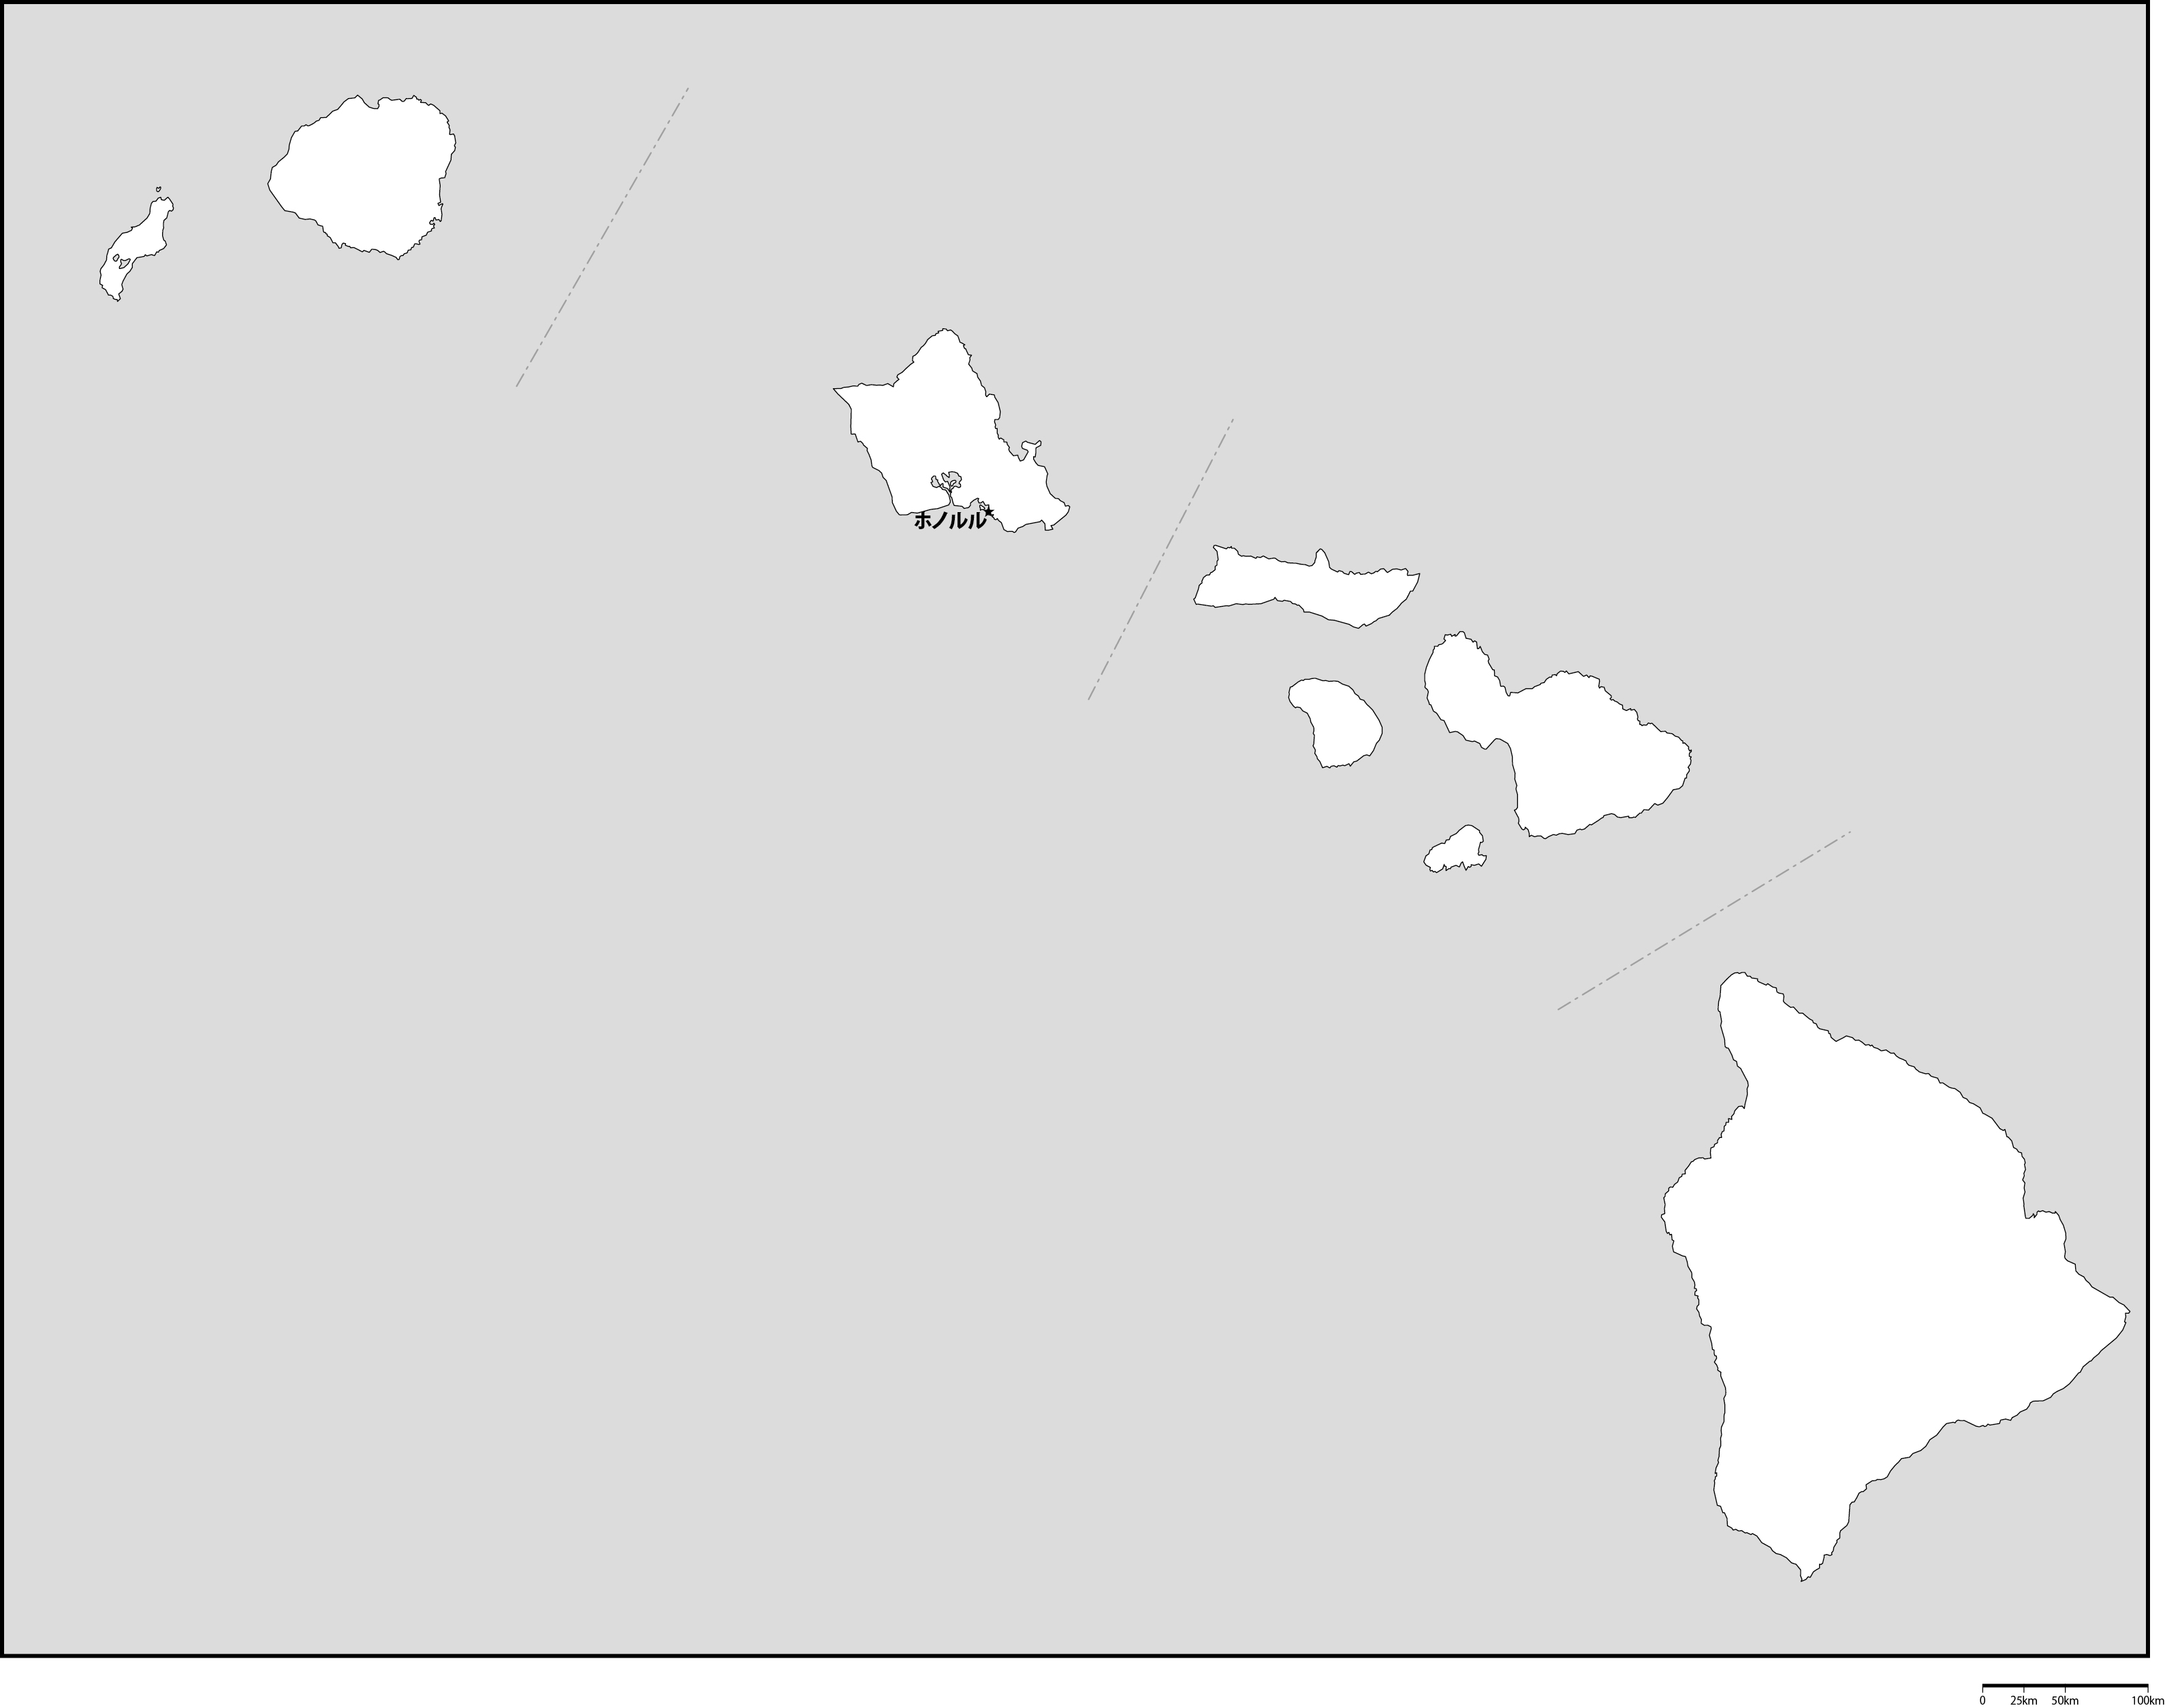 ハワイ州郡分け白地図州都あり(日本語)フリーデータの画像